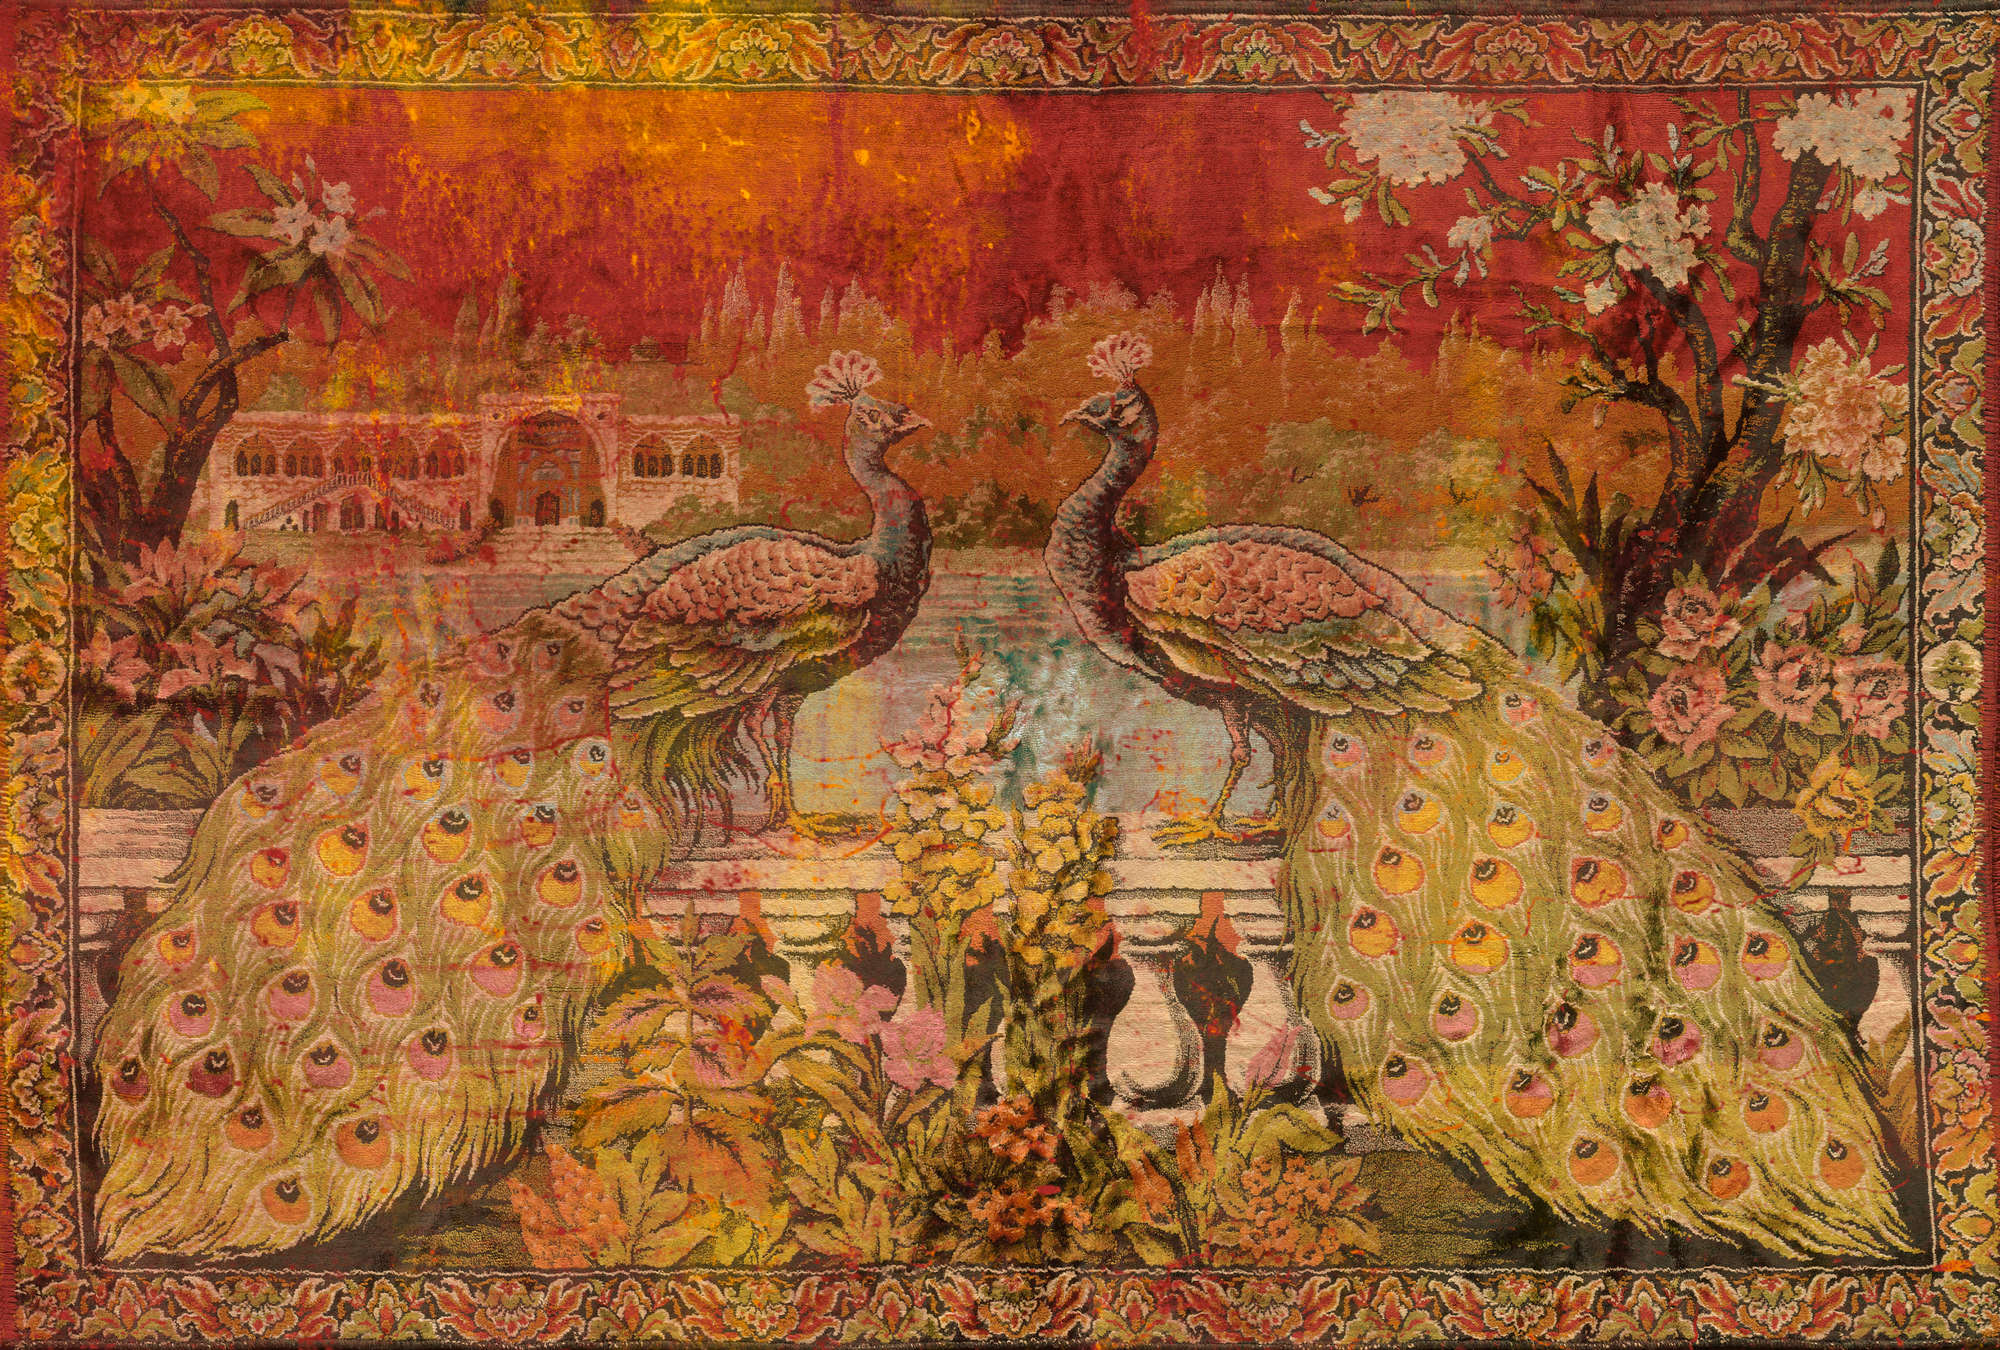             Bunte Fototapete im Ethno-Stil mit indischer Malerei – Grün, Rot, Orange
        